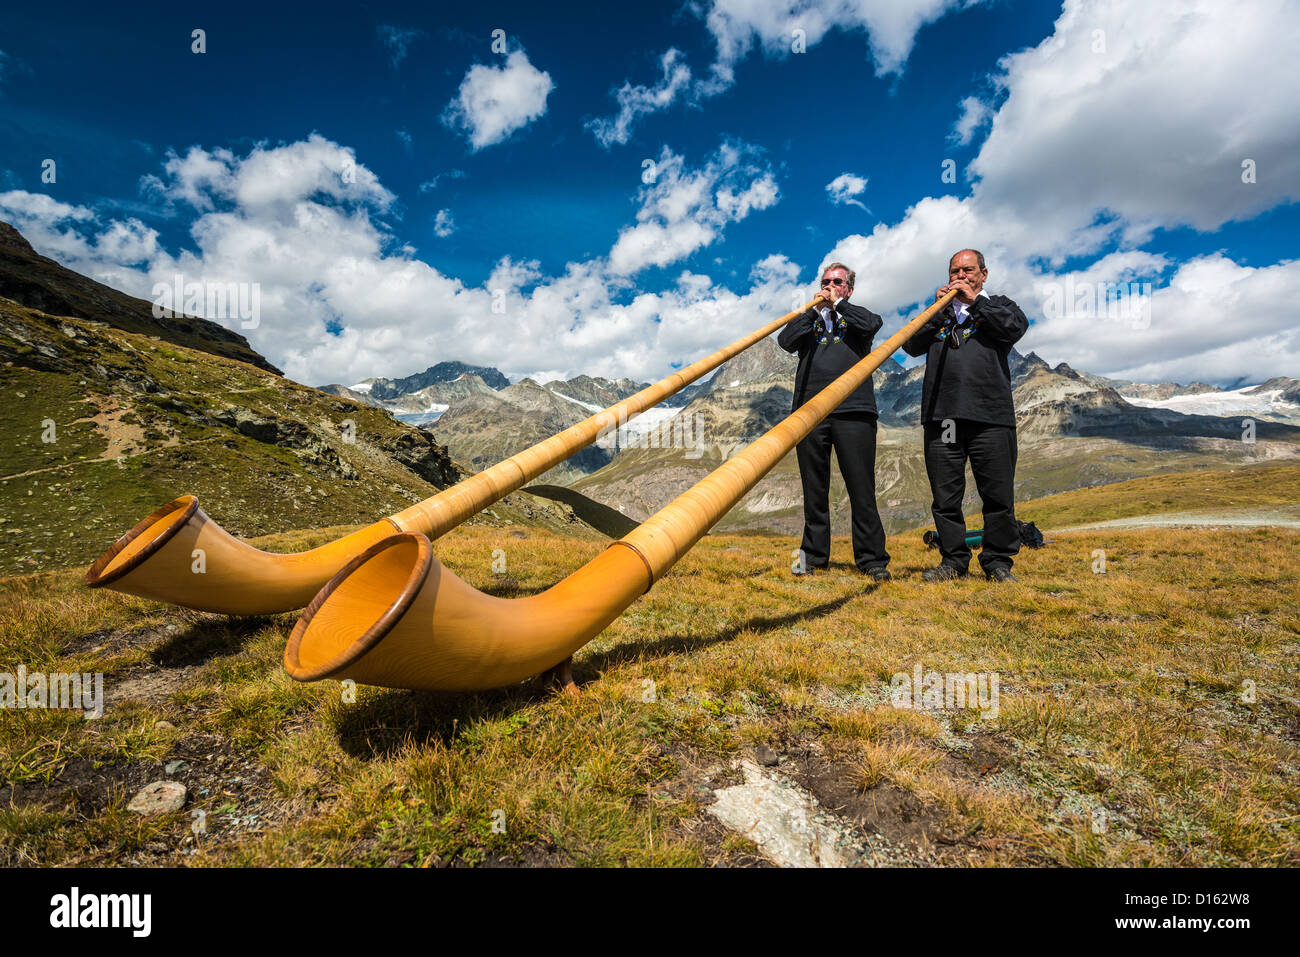 swiss-horn-player-in-the-mountains-near-the-matterhorn-D162W8.jpg